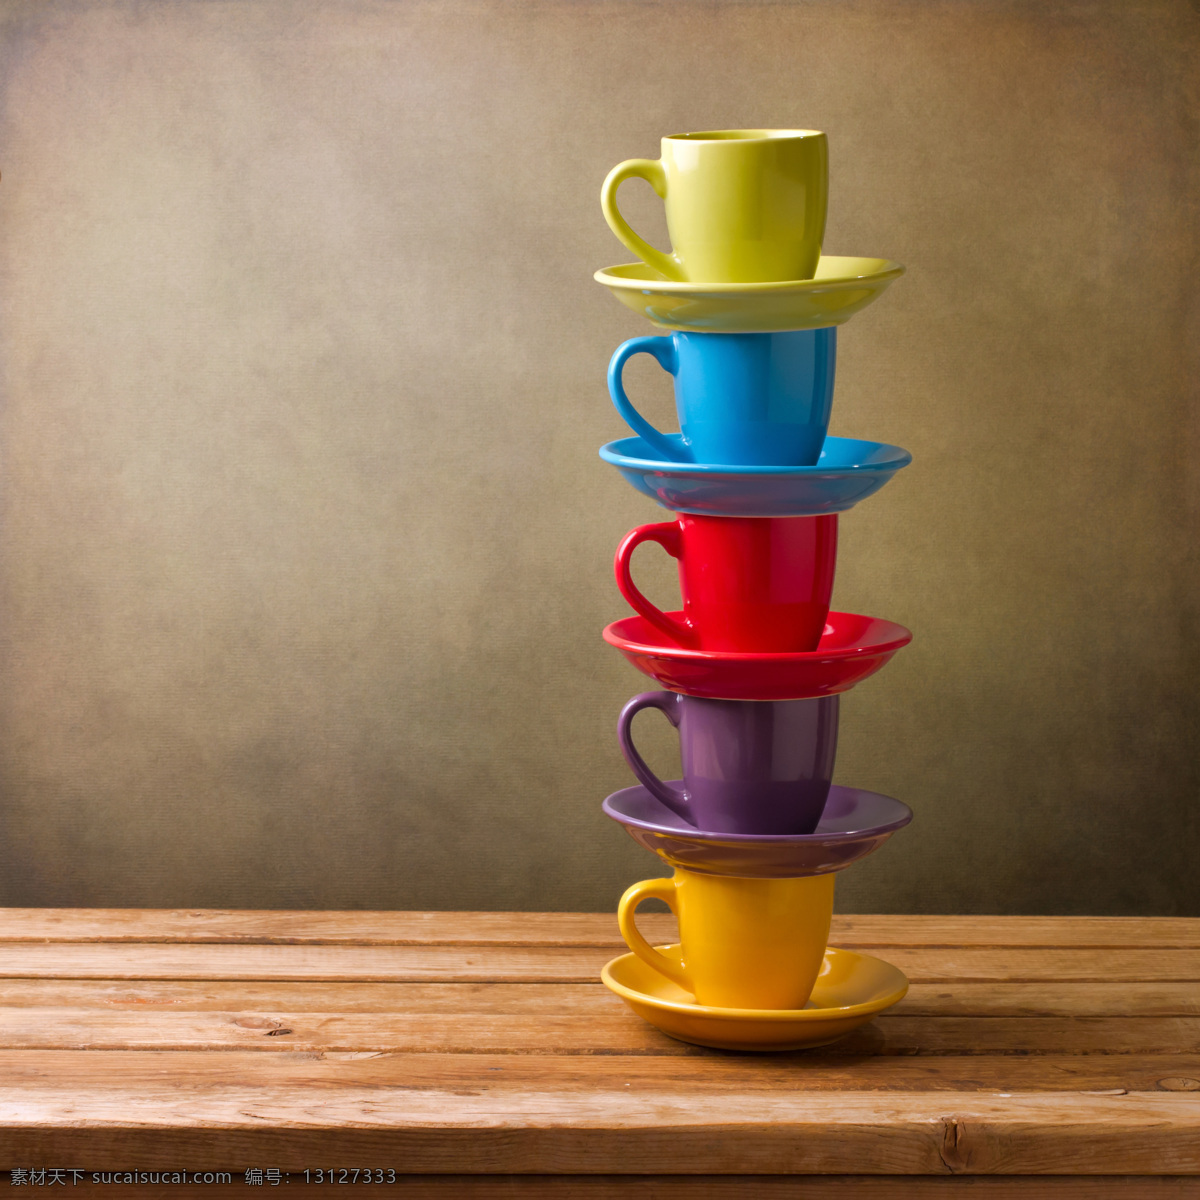 叠 一起 彩色 杯子 陶瓷杯 水杯 咖啡杯 彩色杯子 生活用品 传统工艺品 生活百科